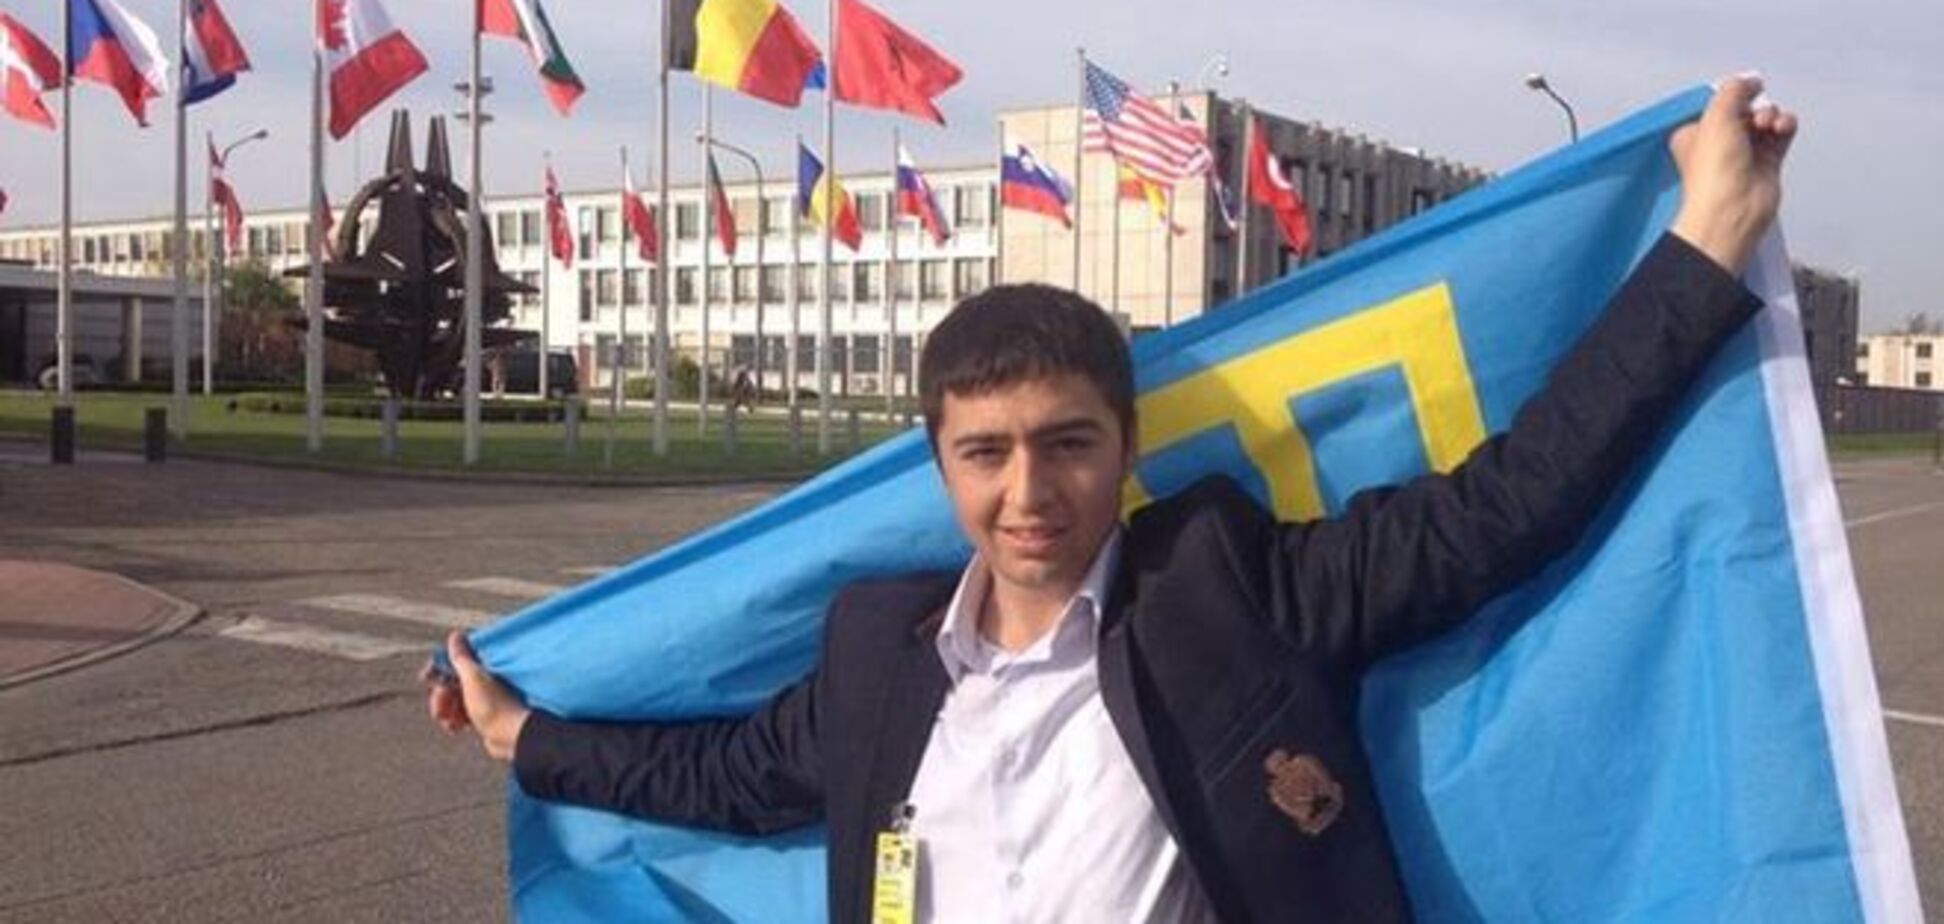 Крымского журналиста внесли в 'черный список' из-за 'циничного сидения во время гимна РФ'